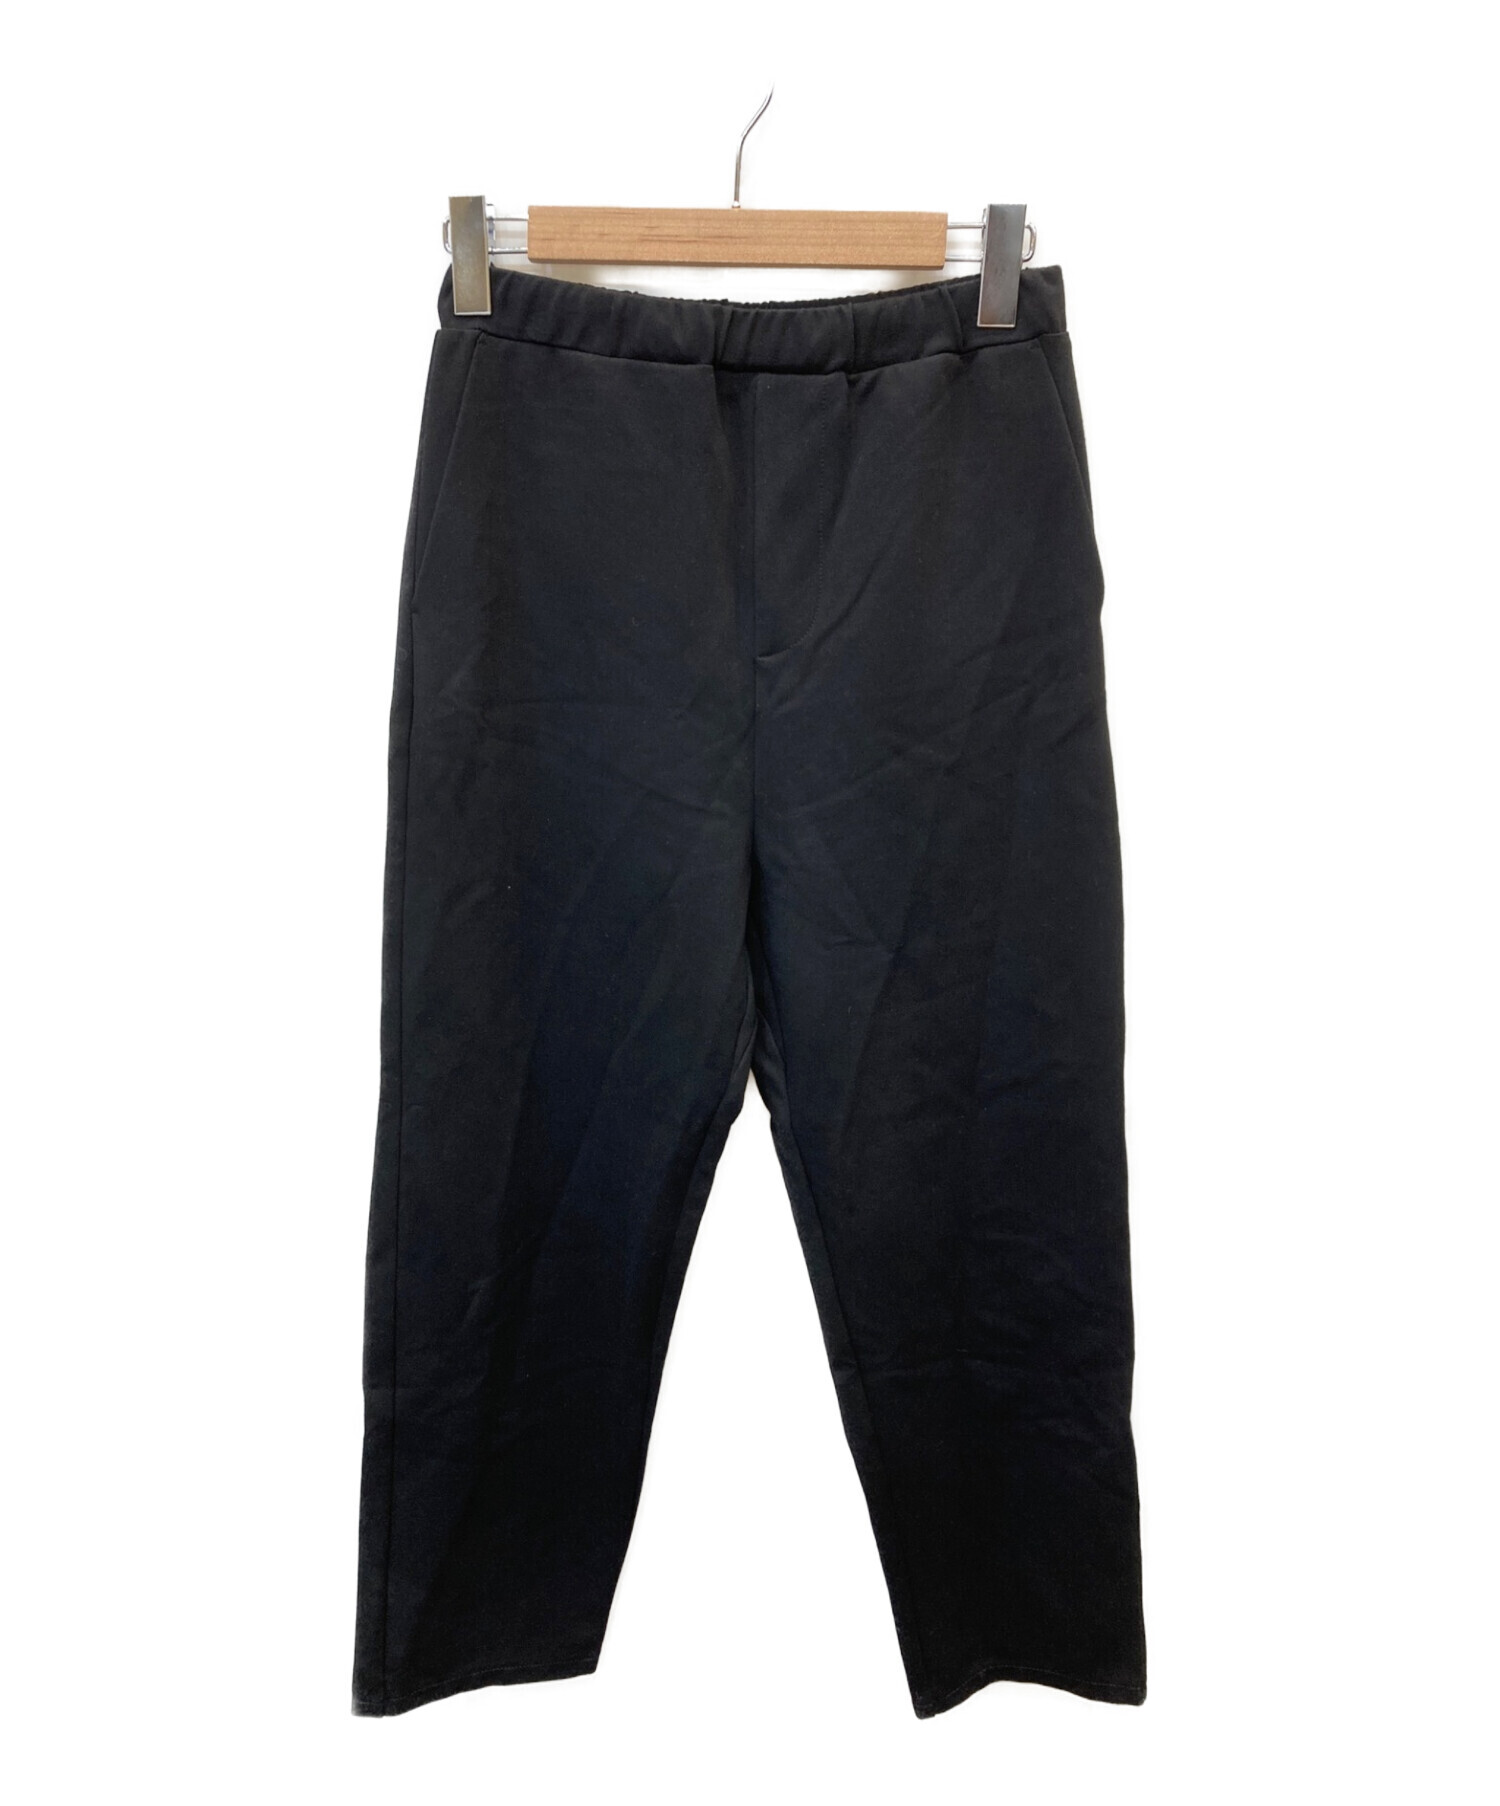 THE NORTH FACE PURPLE LABEL (ノースフェイスパープルレーベル) Stretch Field Pants /  ストレッチフィールドパンツ ブラック サイズ:S